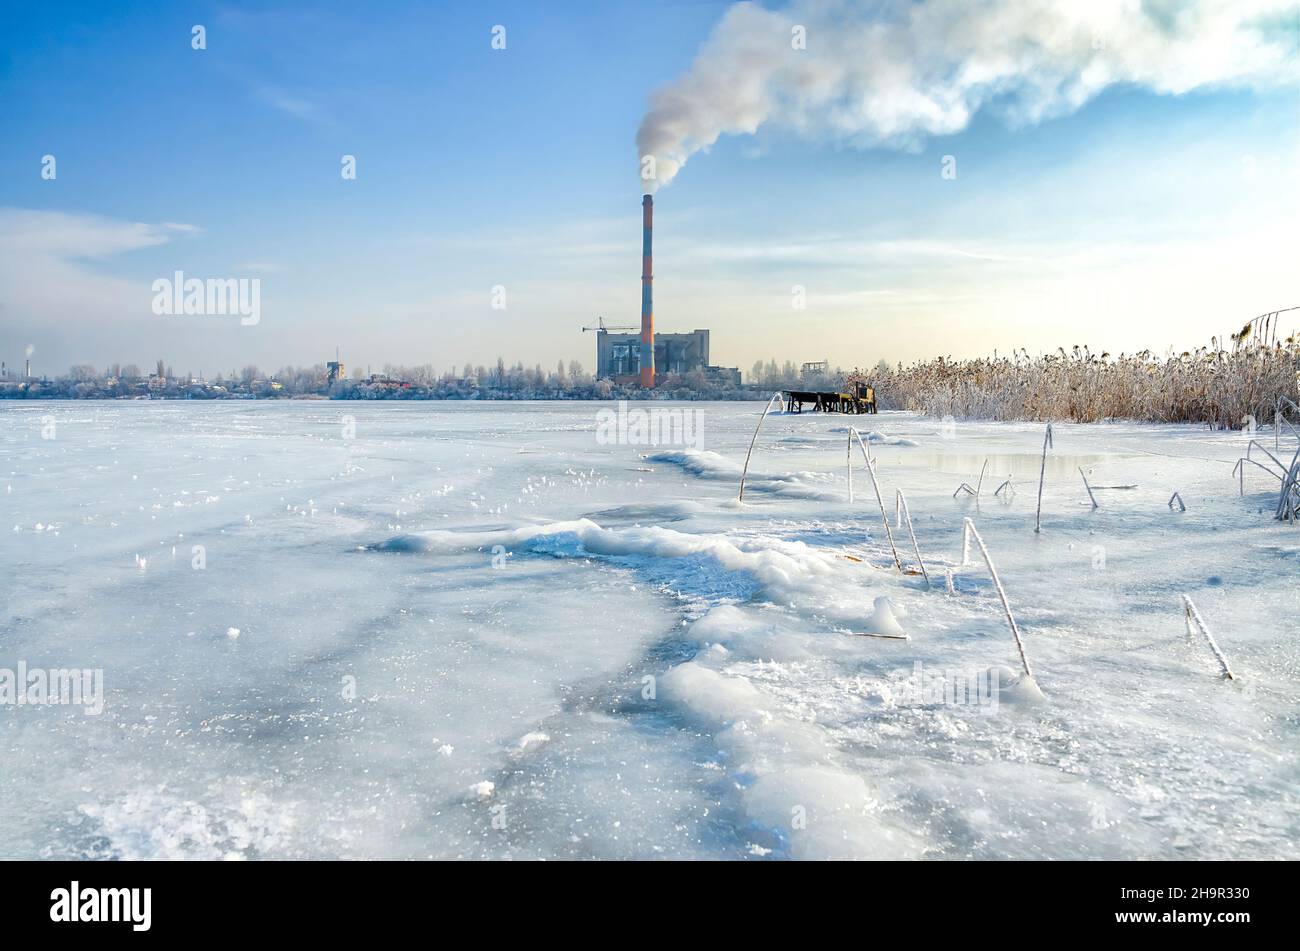 Vue de la cheminée à fumée de l'usine d'incinération des déchets de l'étang gelé.Pollution produite par la combustion des ordures. Banque D'Images